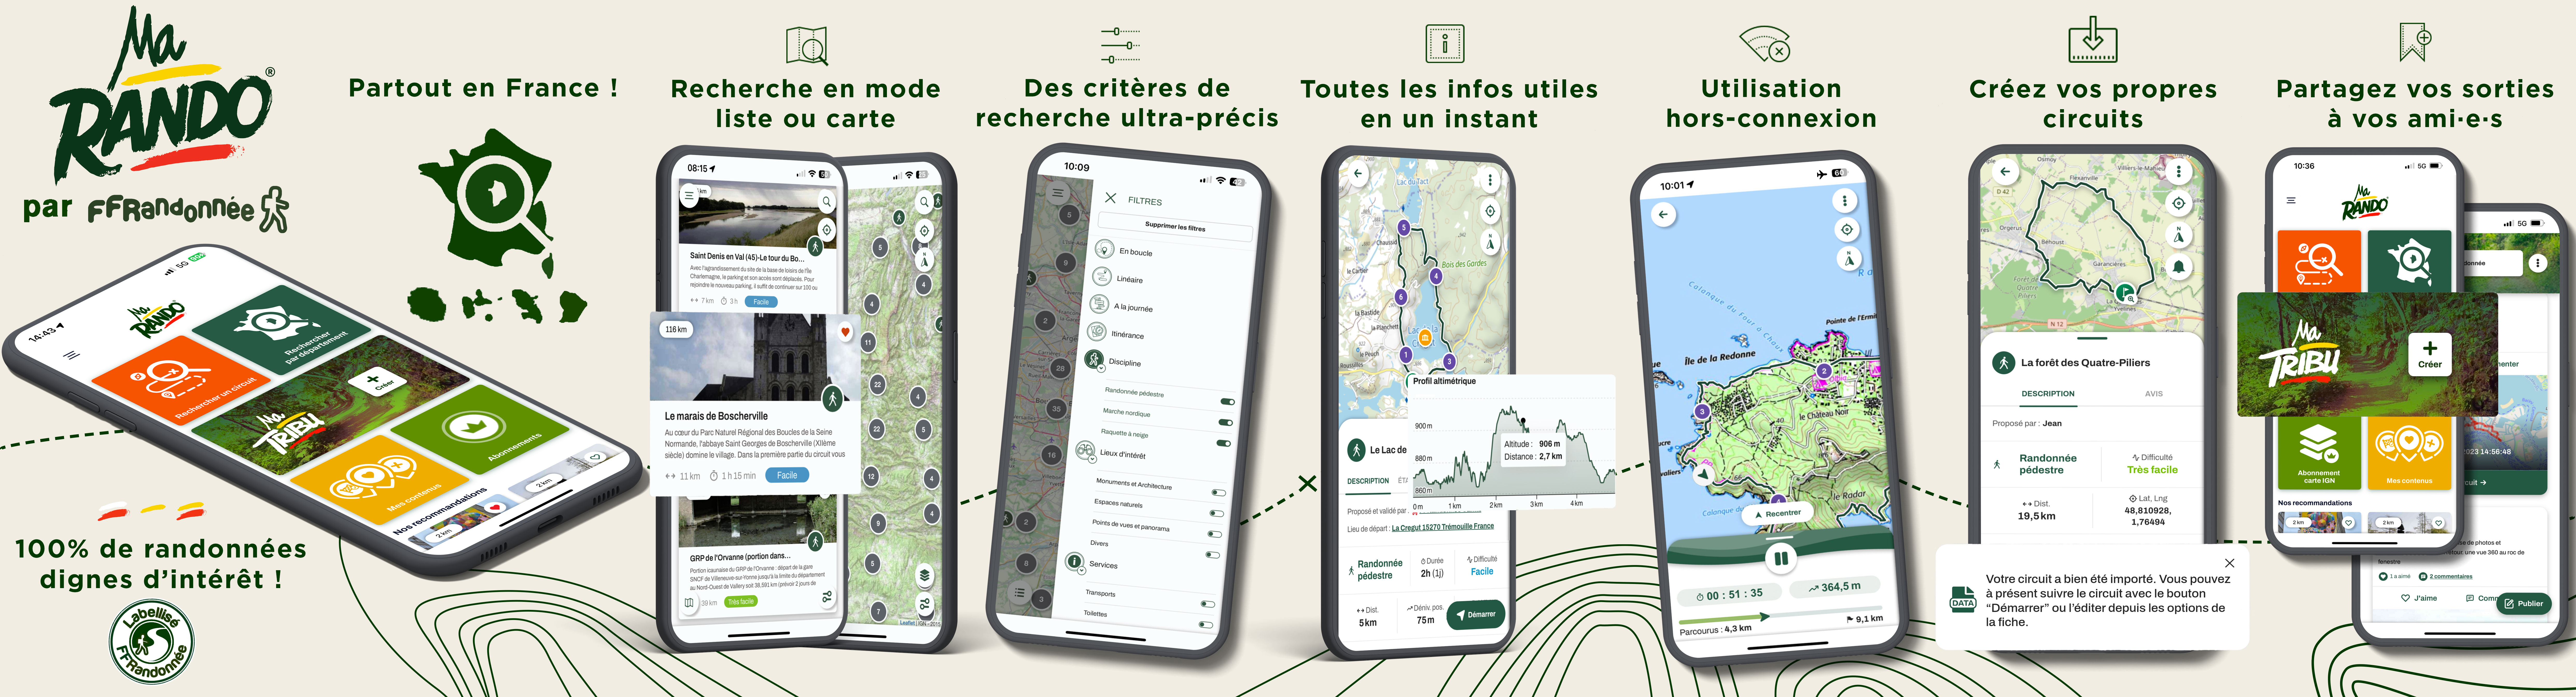 MaRando, l'application mobile gratuite de randonnée de la FFRandonnée